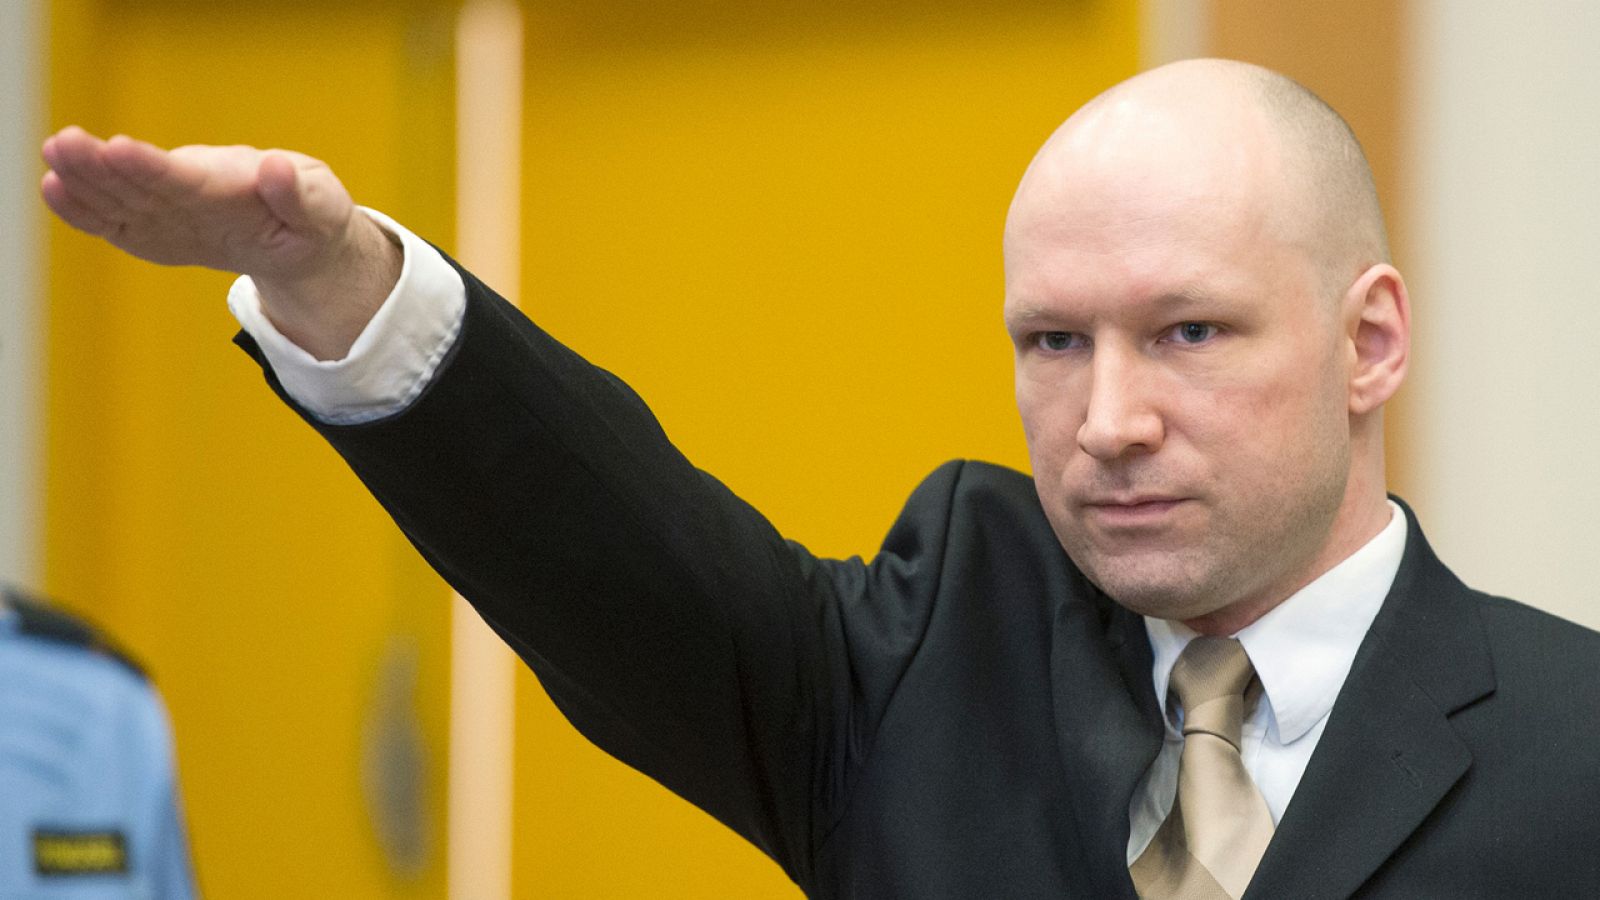 El ultraderechista Anders Behring Breivik hace un saludo nazi frente al tribunal noruego